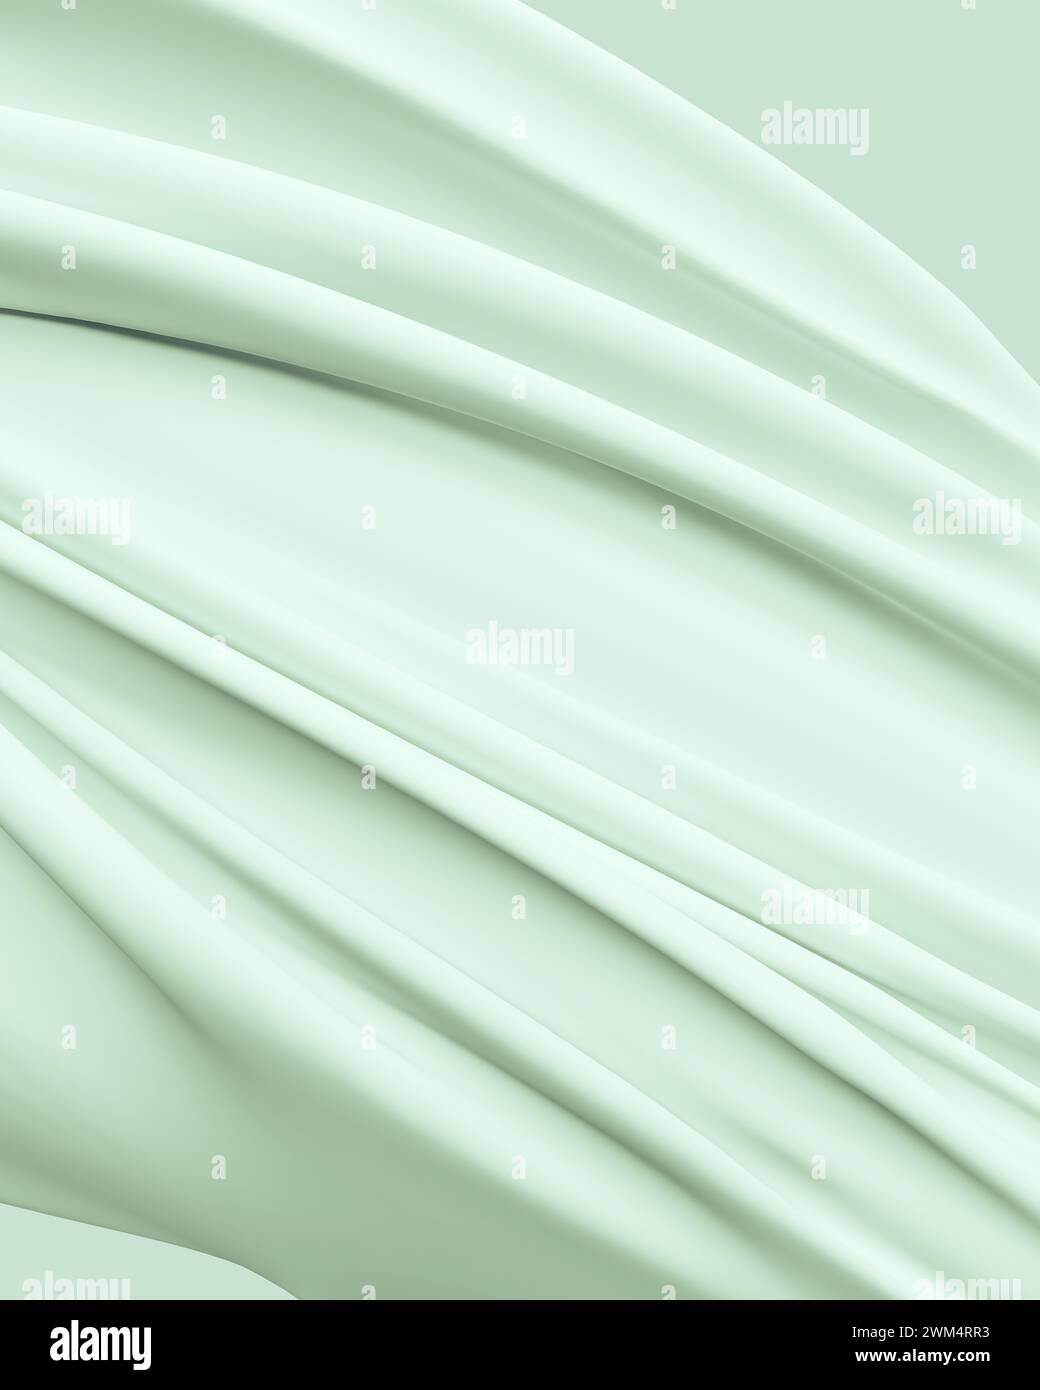 Sfondi neutri tonalità di verde tenue eleganza rilassante pieghe fluide sfondo astratto diagonale rappresentazione in 3d con rendering digitale Foto Stock